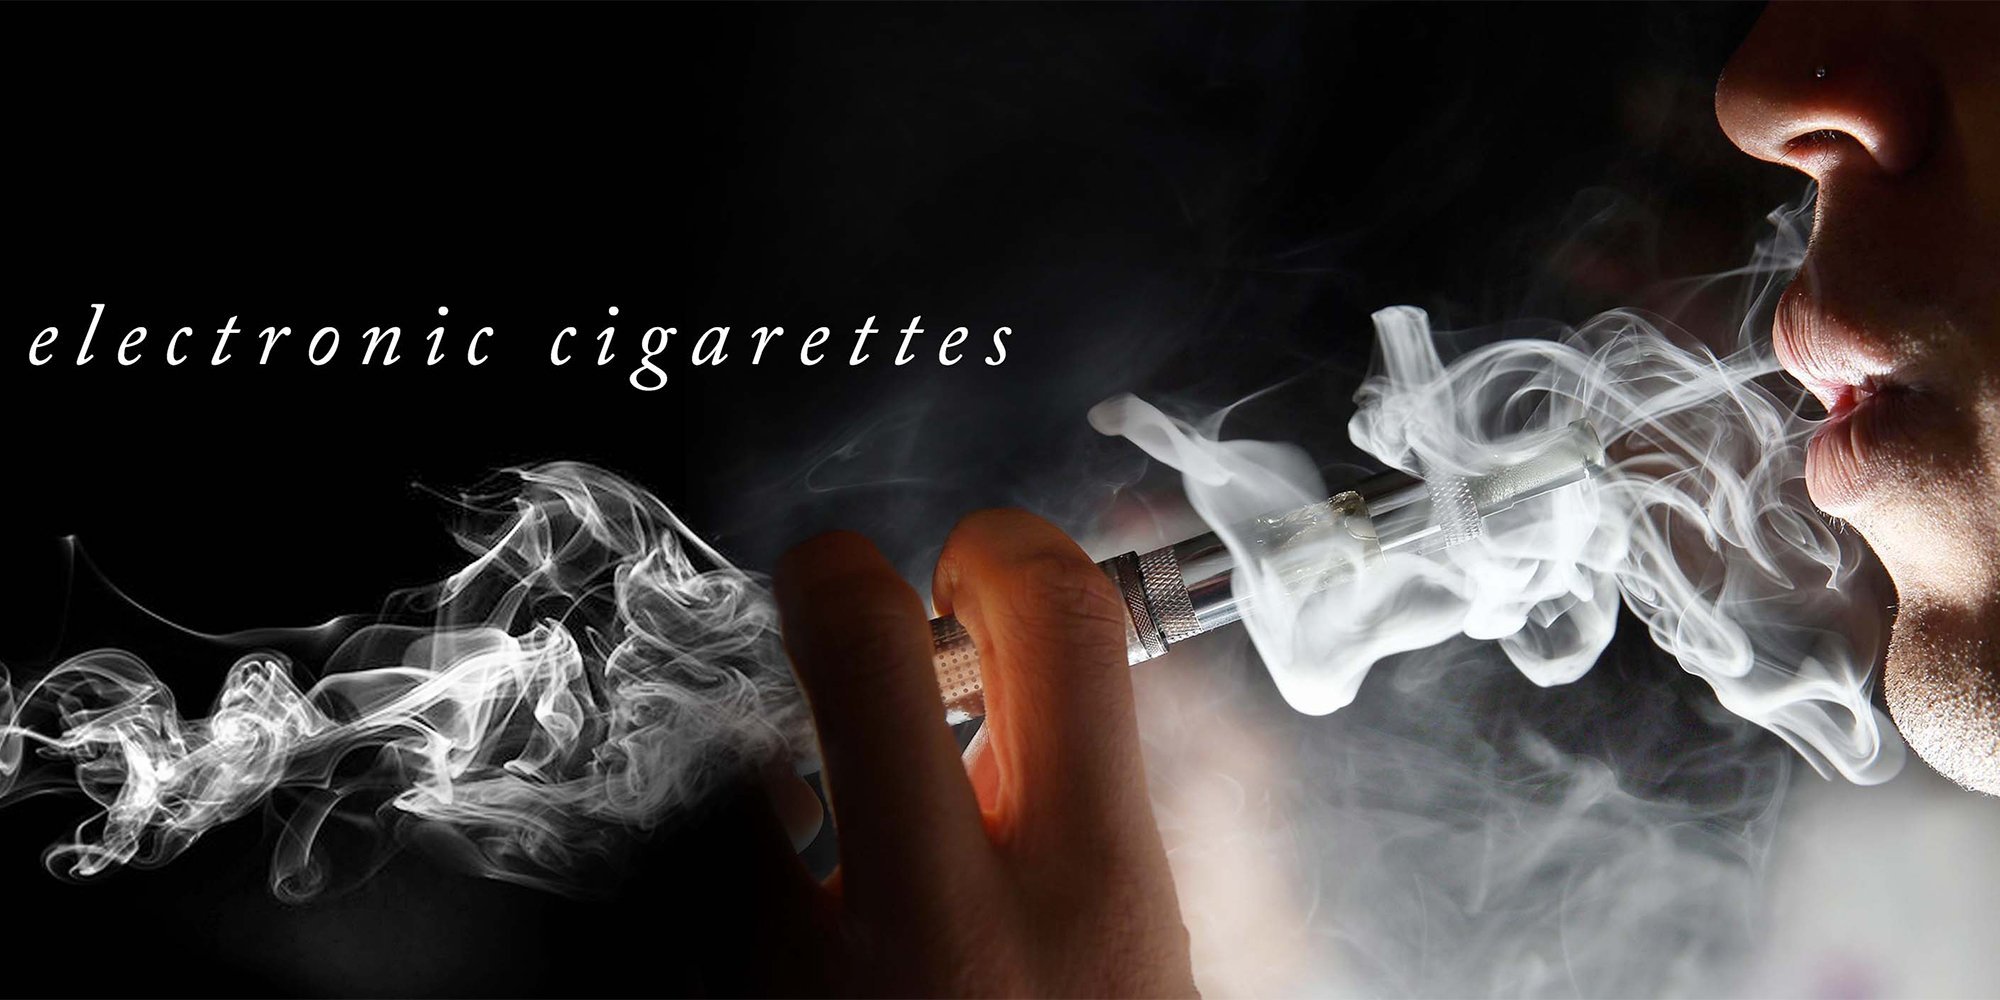 Реклама электронных сигарет